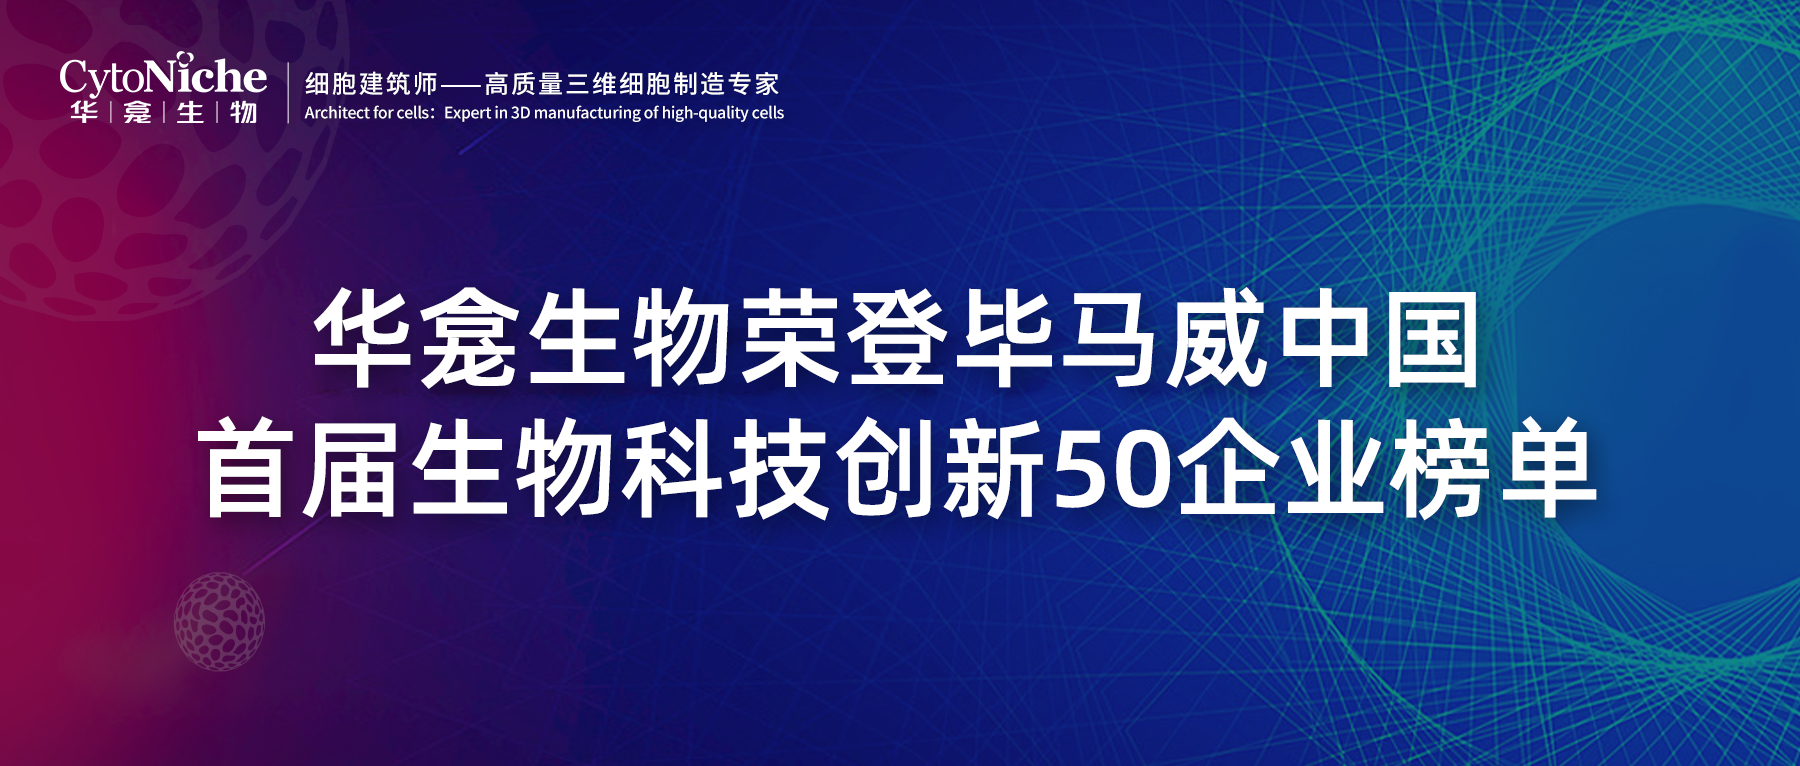 喜讯 | 华龛生物荣登毕马威中国首届生物科技创新50企业榜单